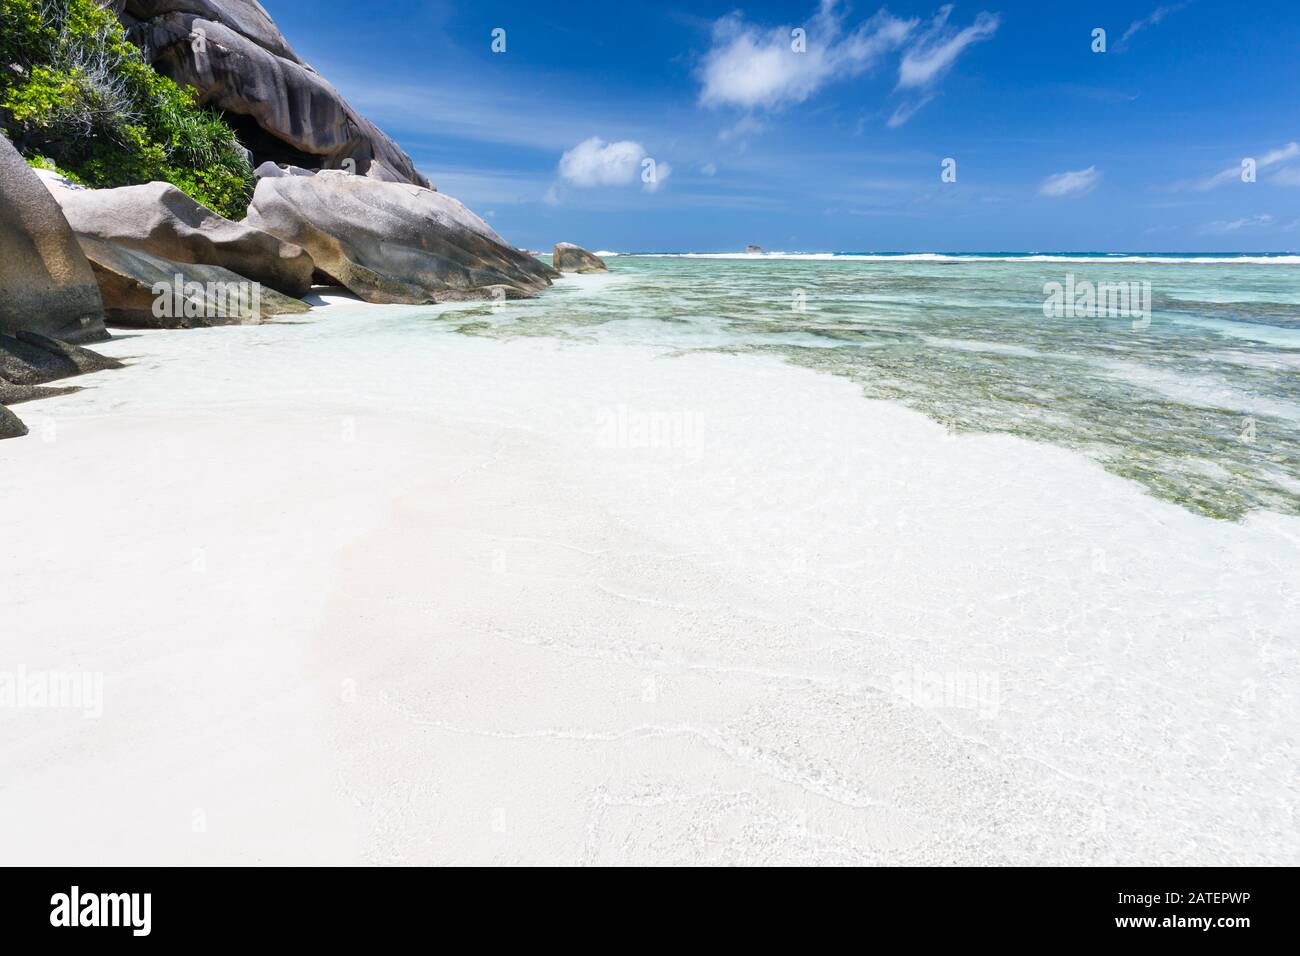 La bella spiaggia tropicale Anse Source D'Argent a la Digue, Seychelles con acque cristalline, rocce di granito e barriere coralline nella laguna Foto Stock